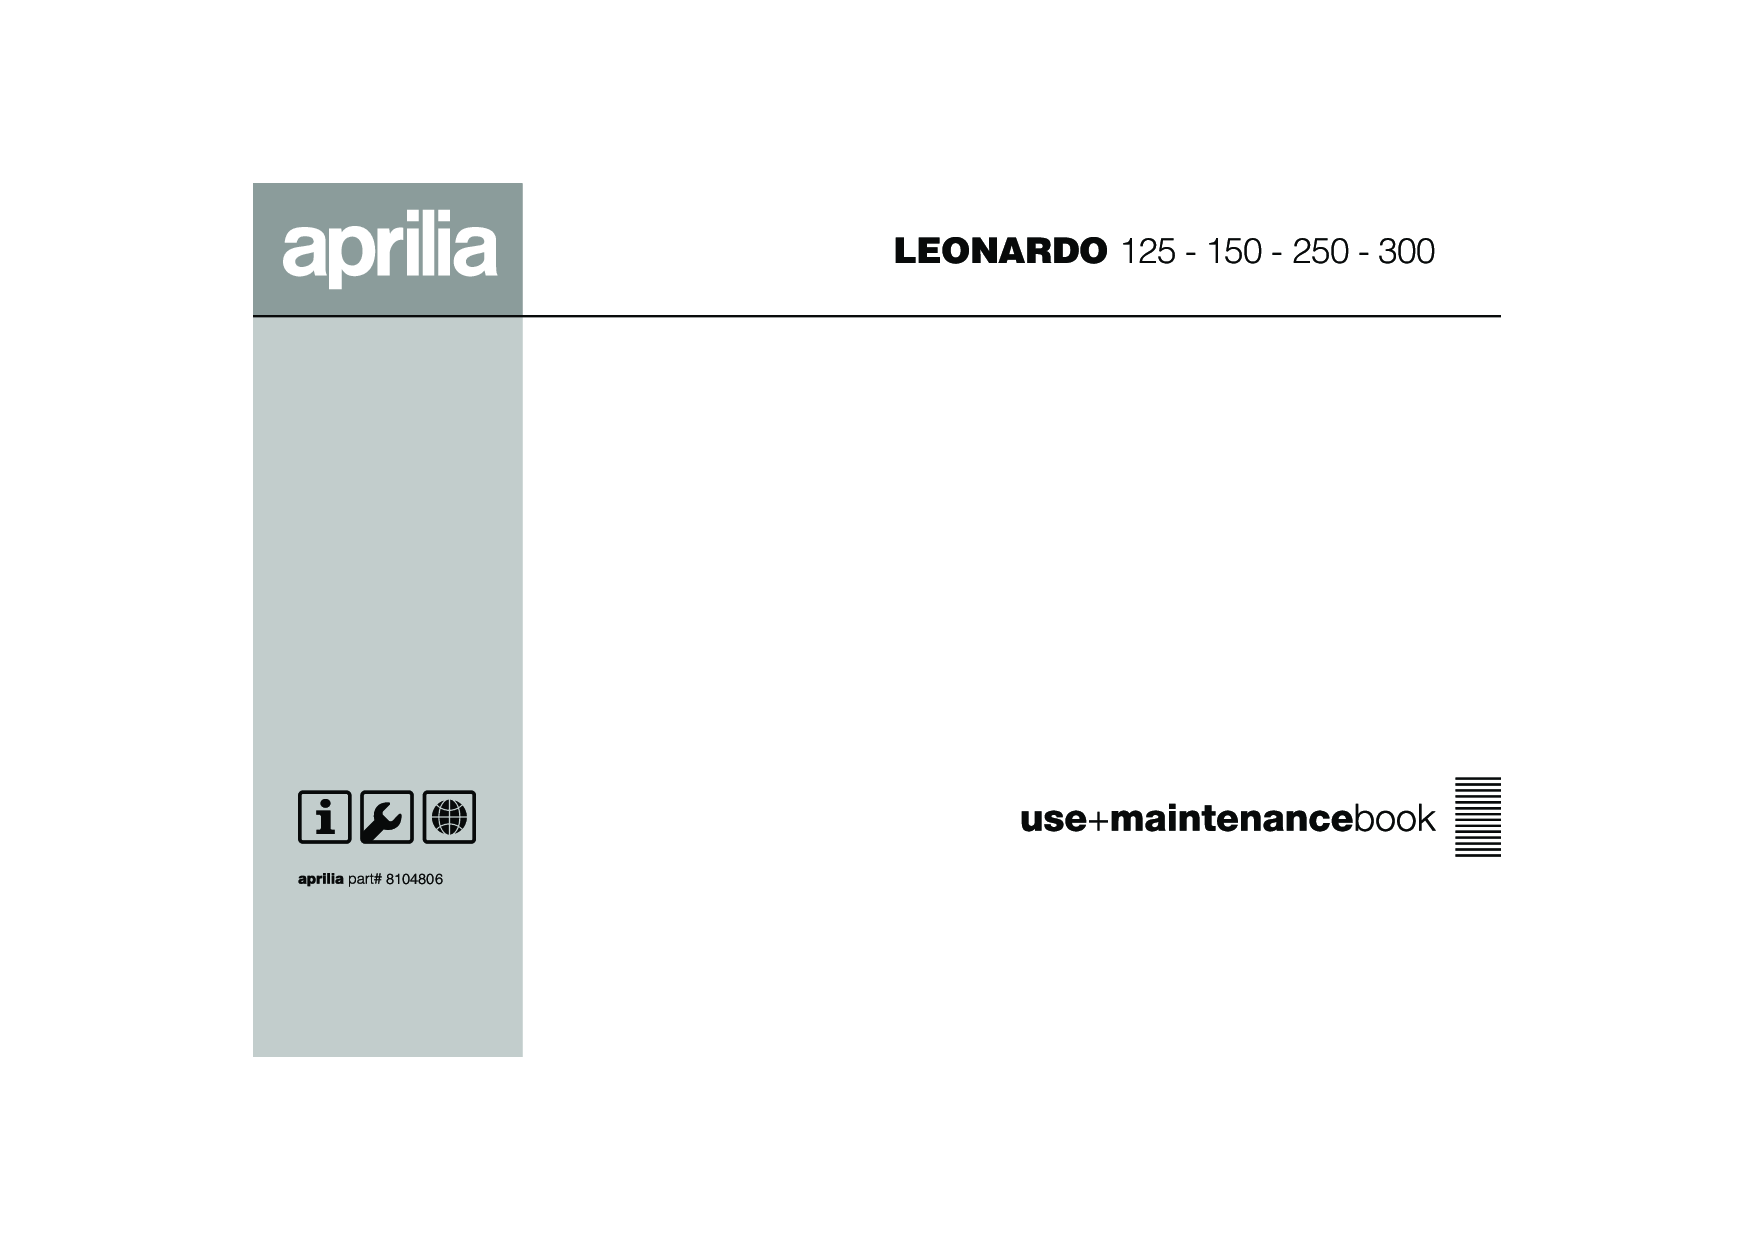 Aprilia LEONARDO 150, LEONARDO 125 User Manual 2006